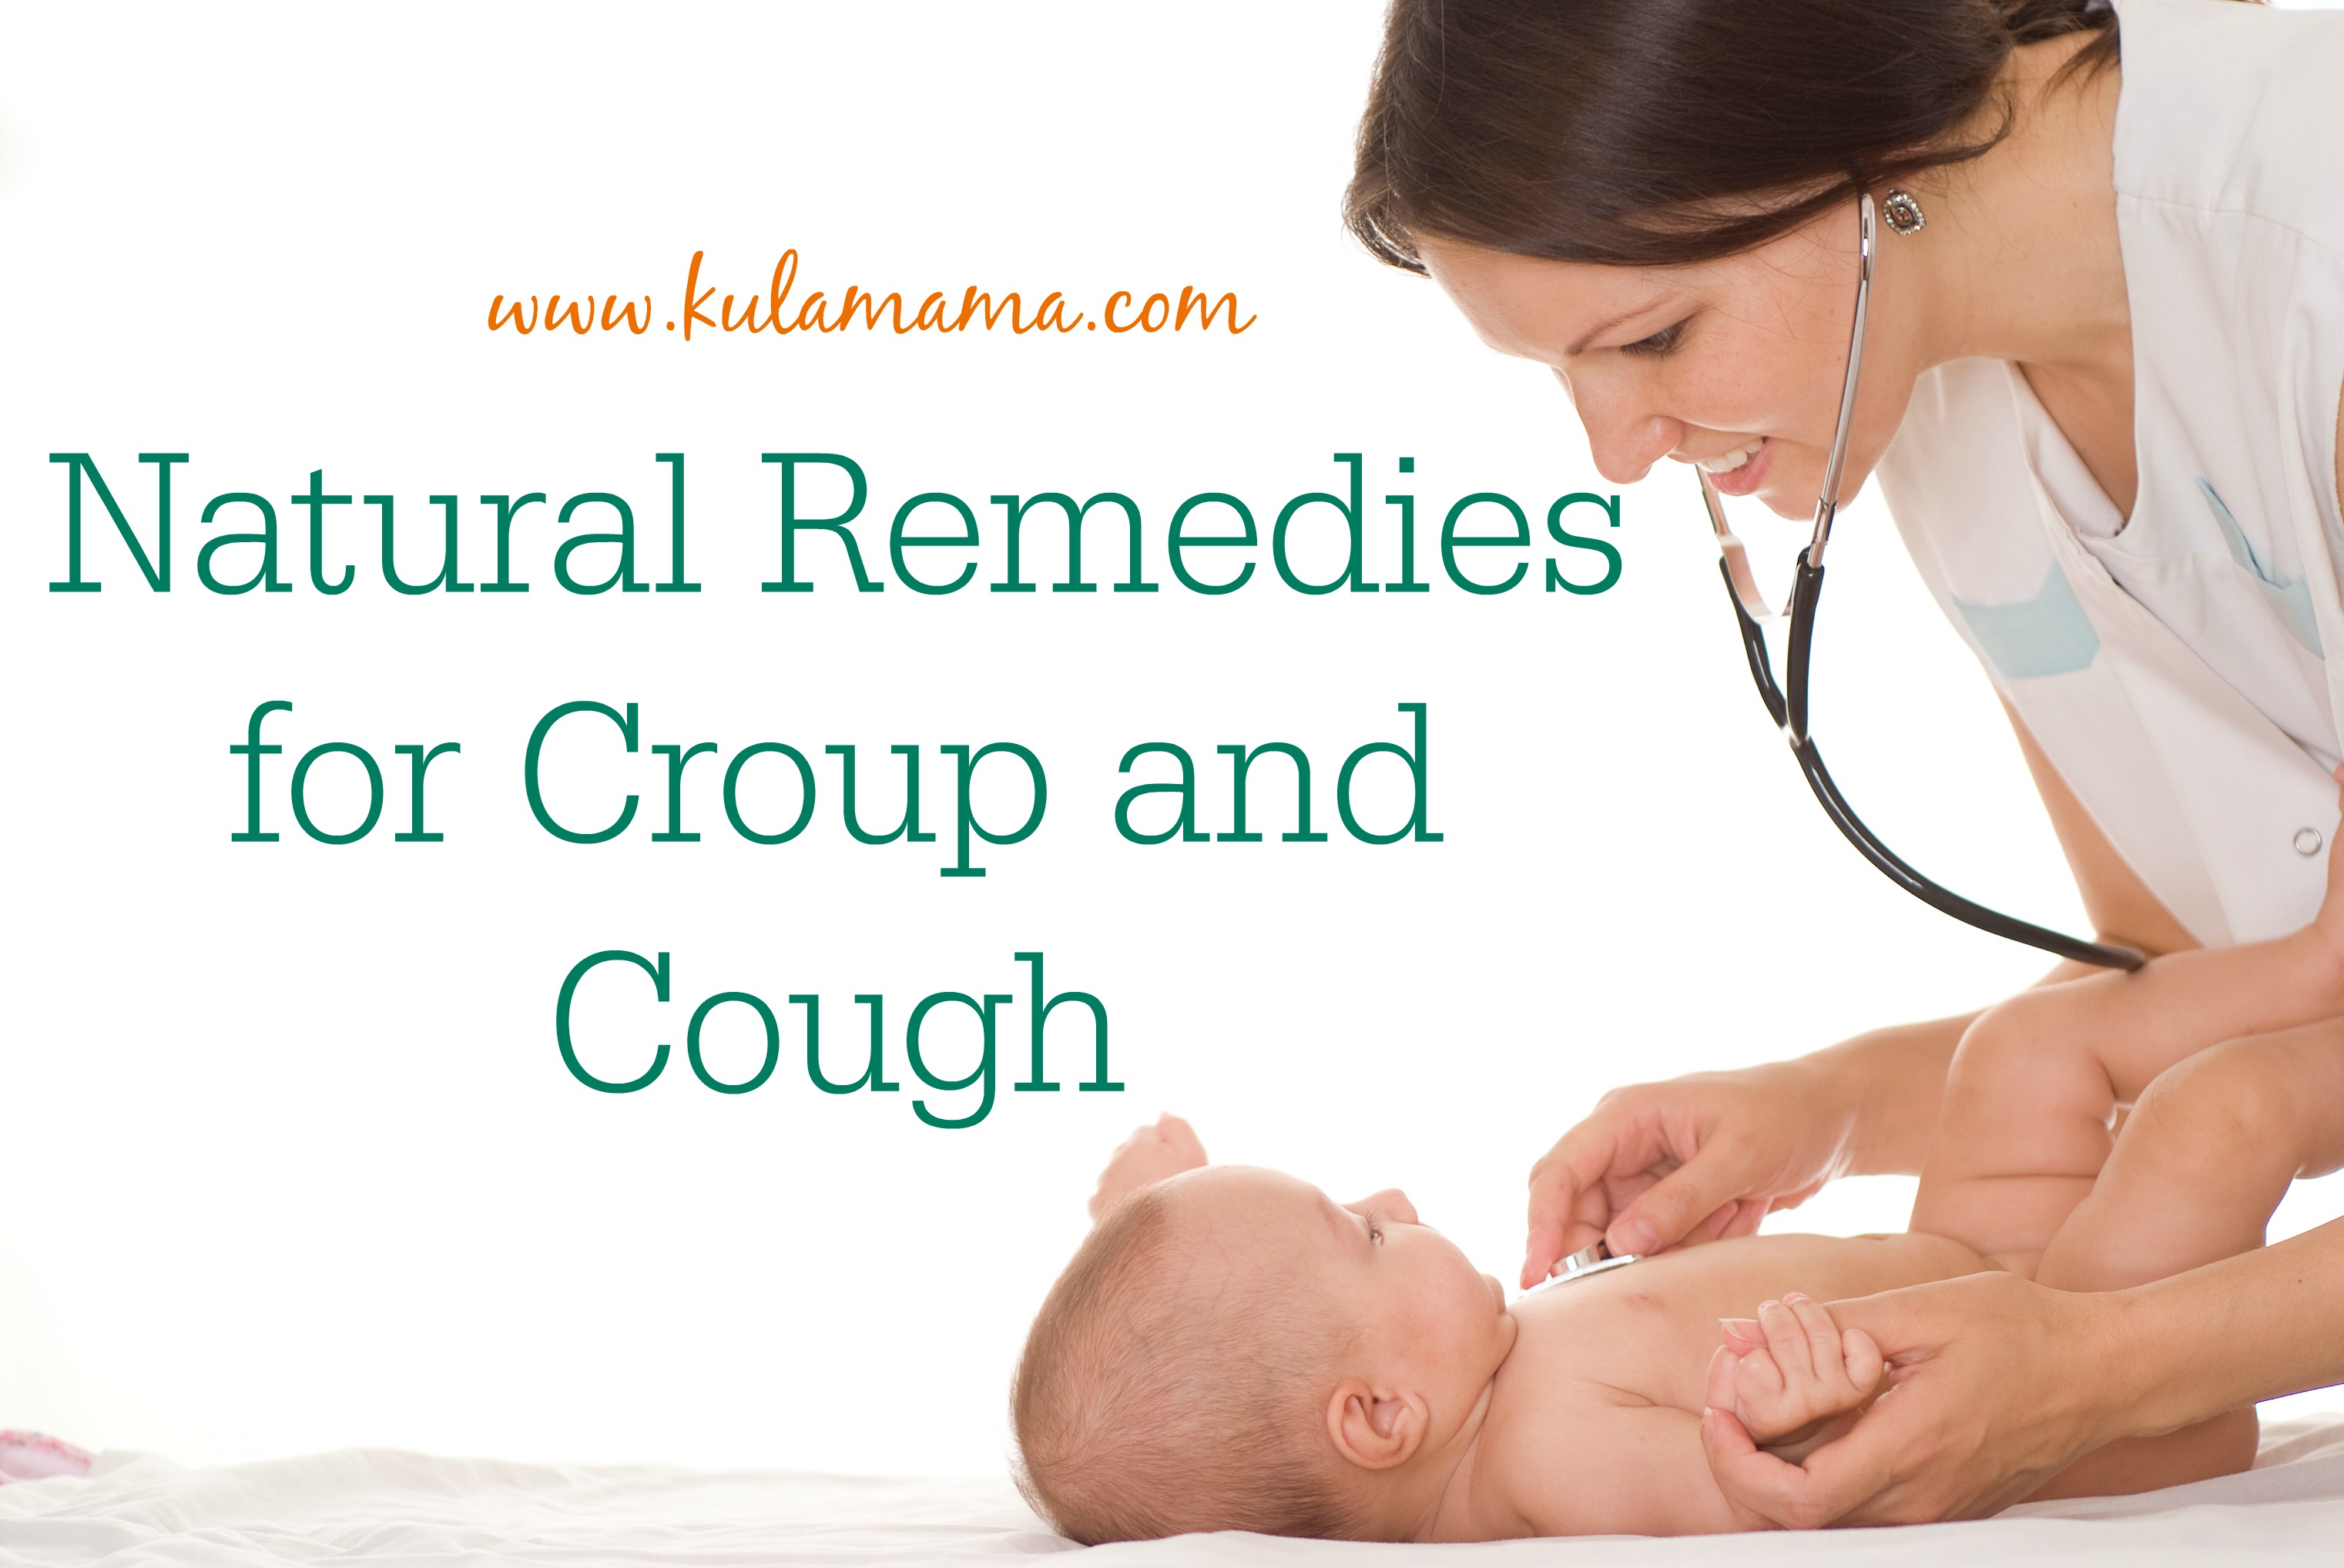 Croup cough